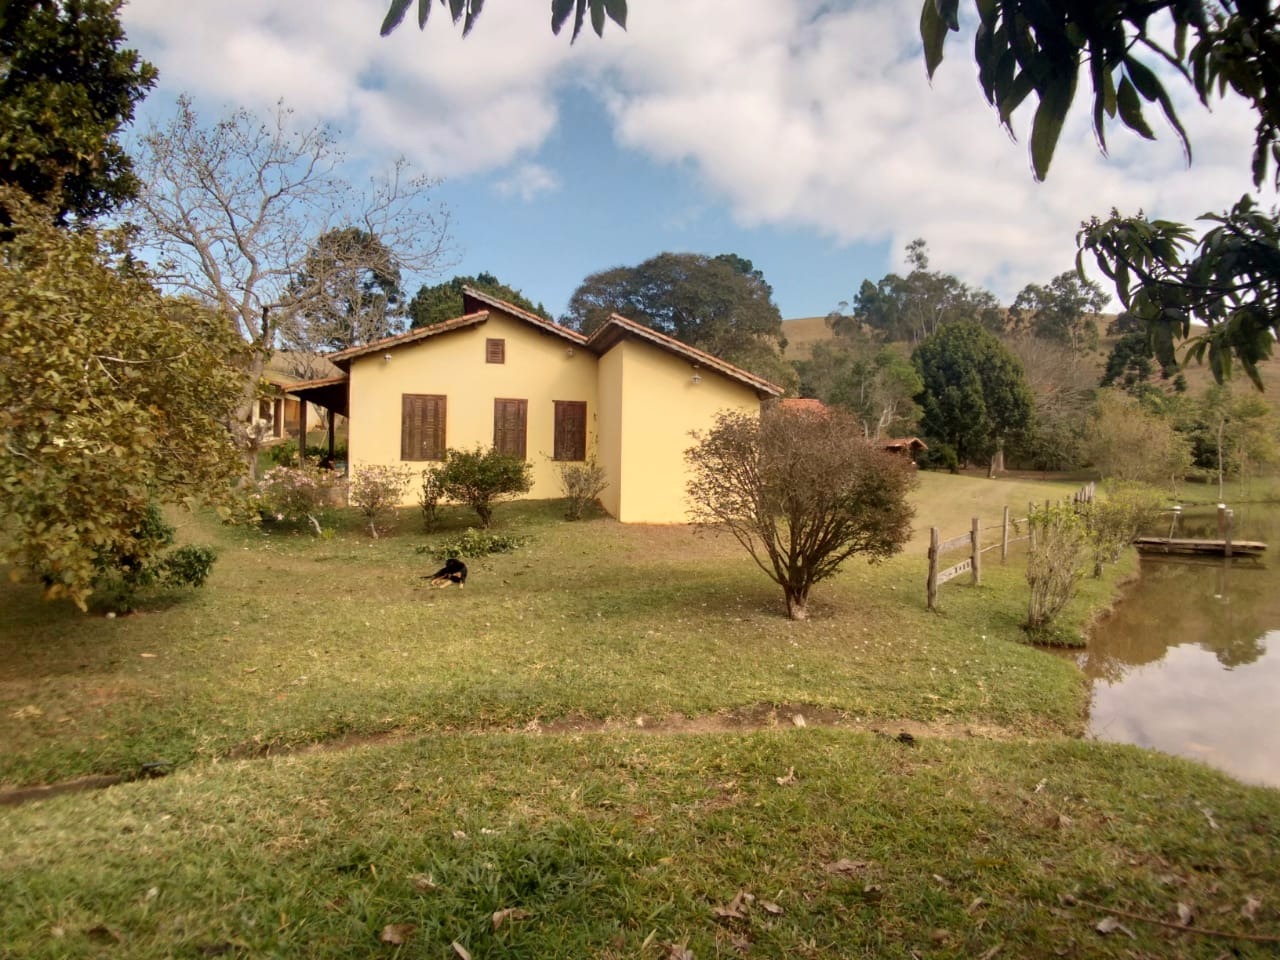 Fazenda de 47 ha em São Luiz do Paraitinga, SP